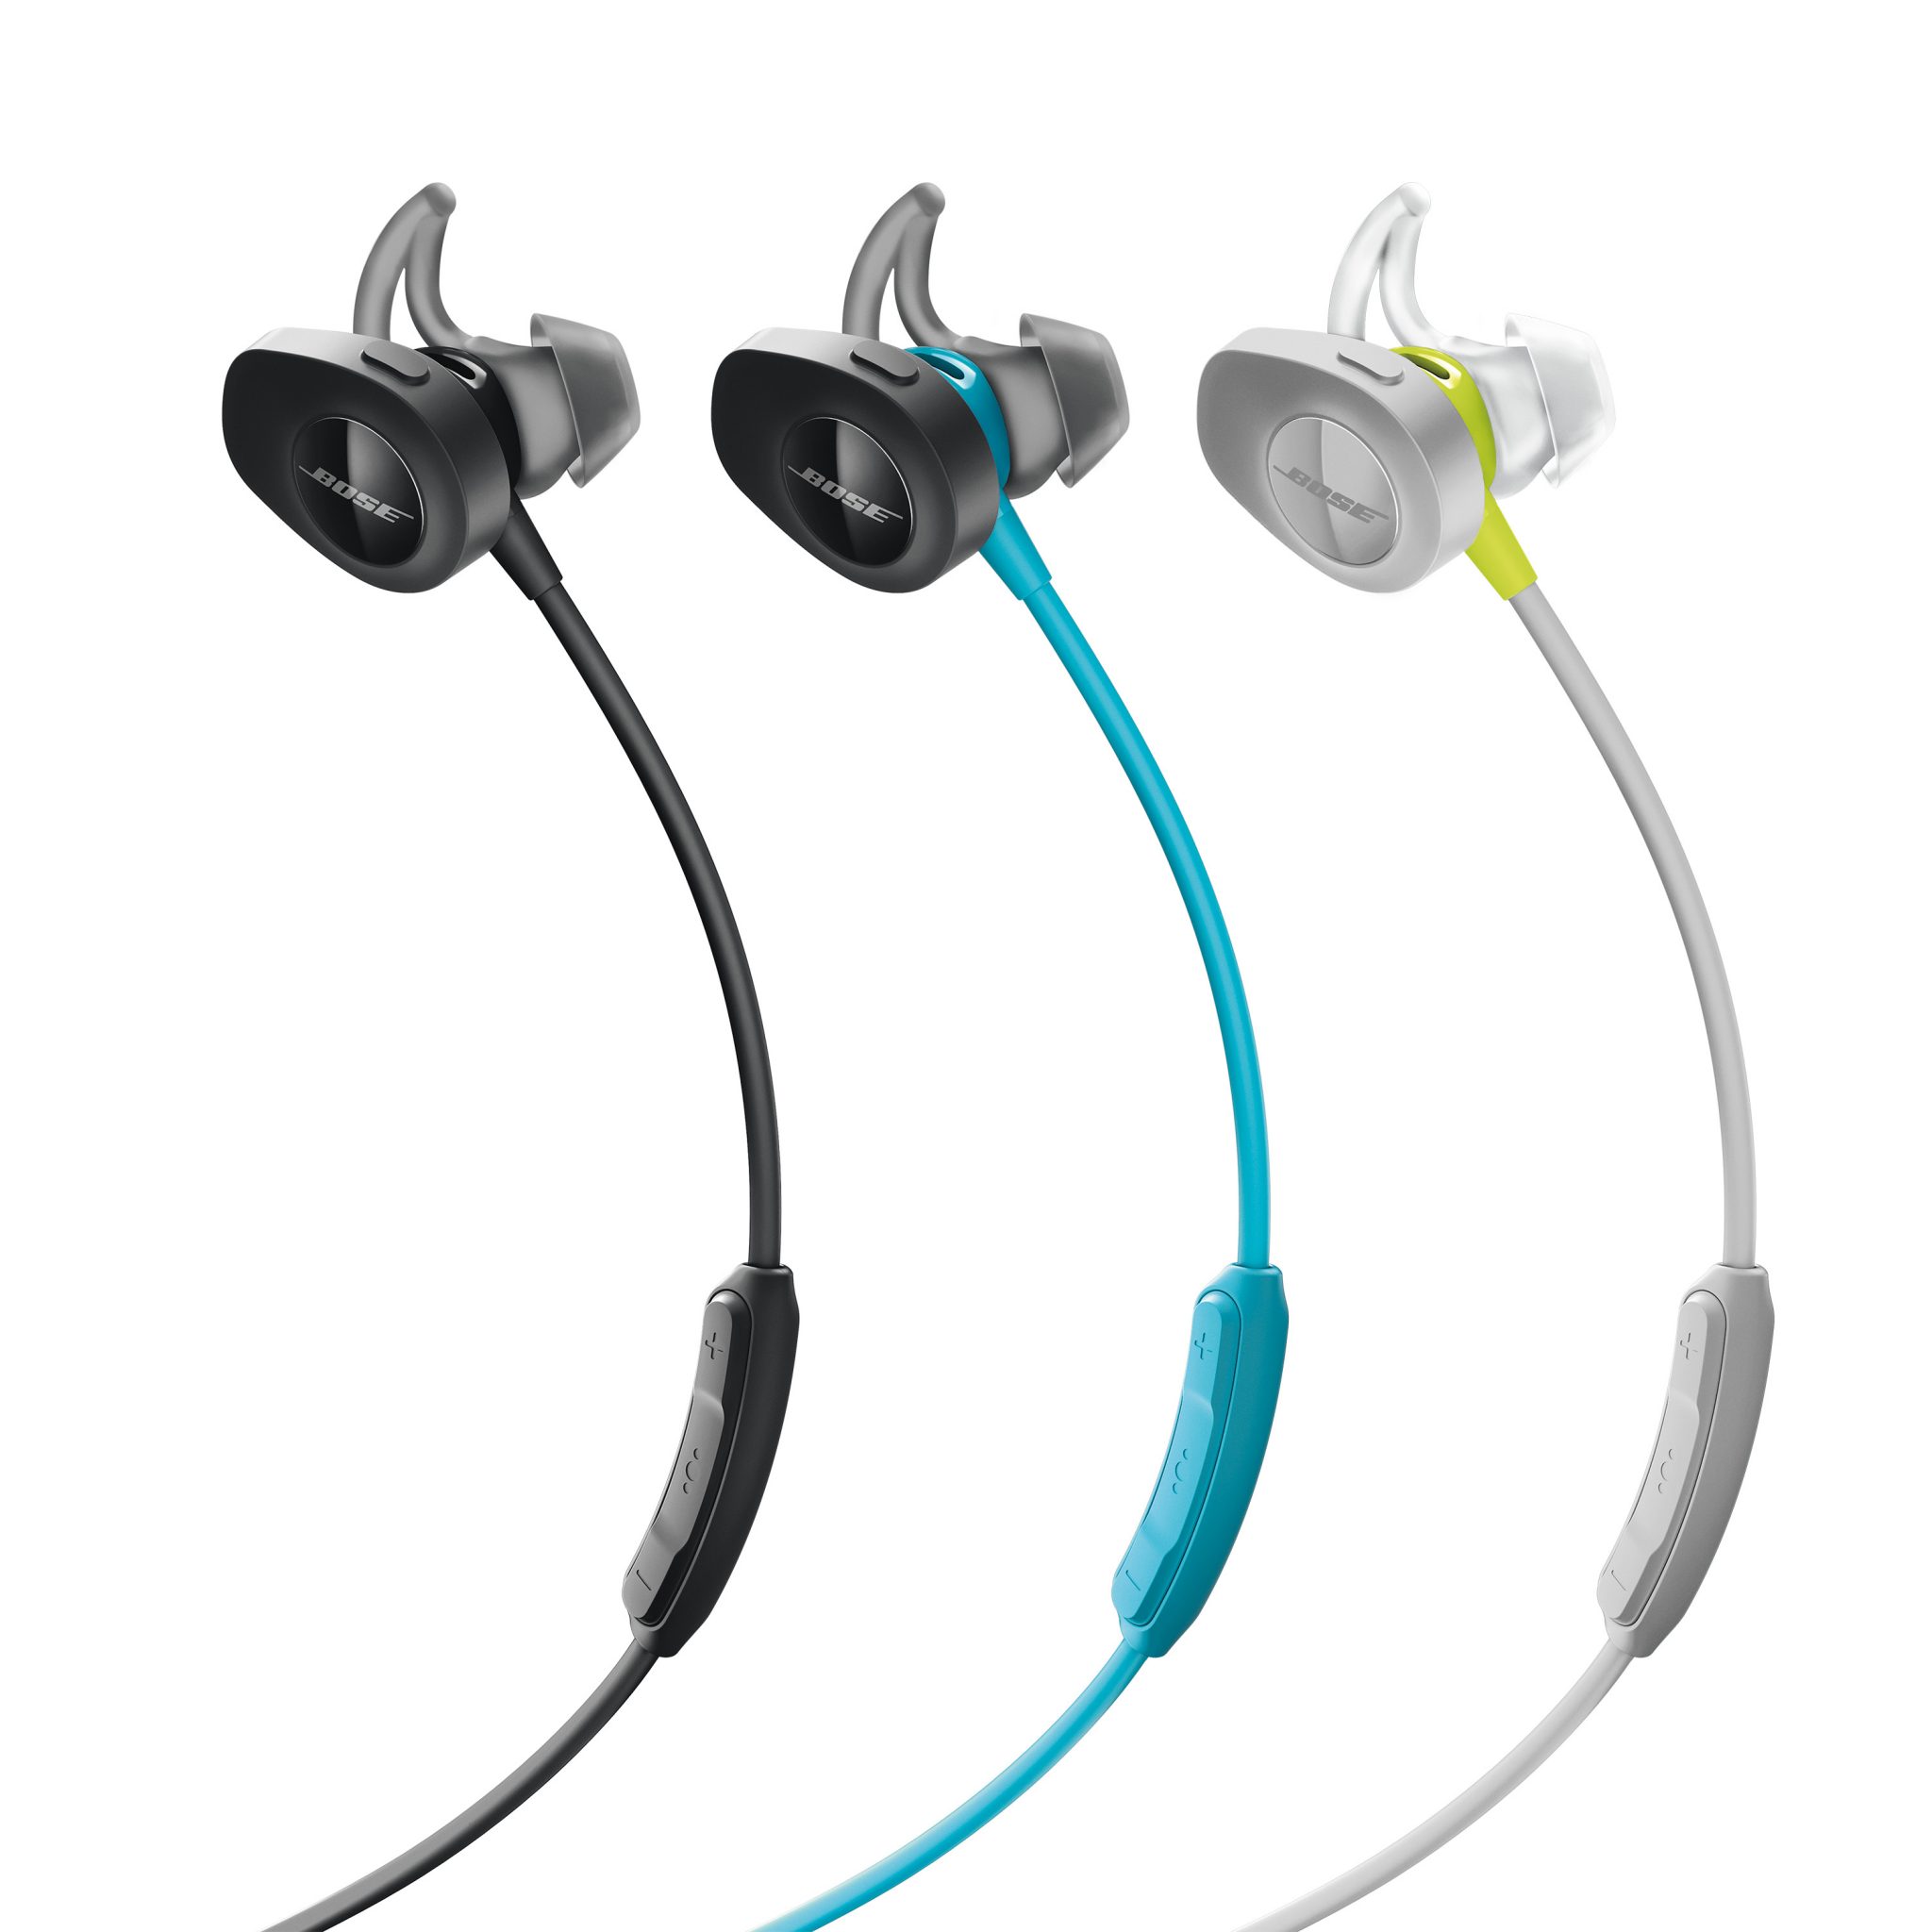 Bose звук. Bose SOUNDSPORT Wireless Headphones. Беспроводные наушники Bose Sport Earbuds. Беспроводные наушники Bose Sport Earbuds Blue.